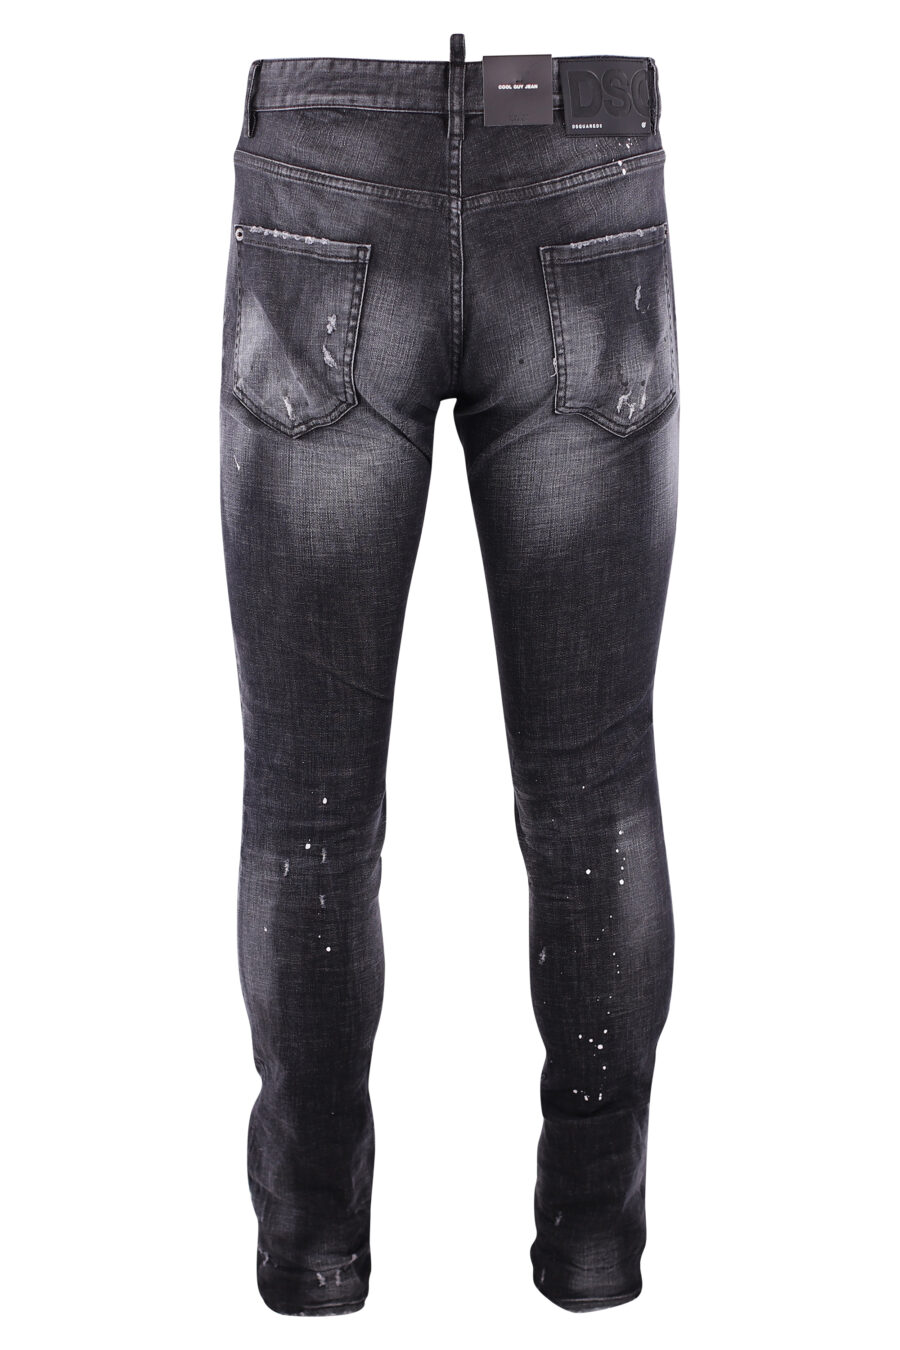 Pantalón vaquero "cool guy" negro con rotos - IMG 3246